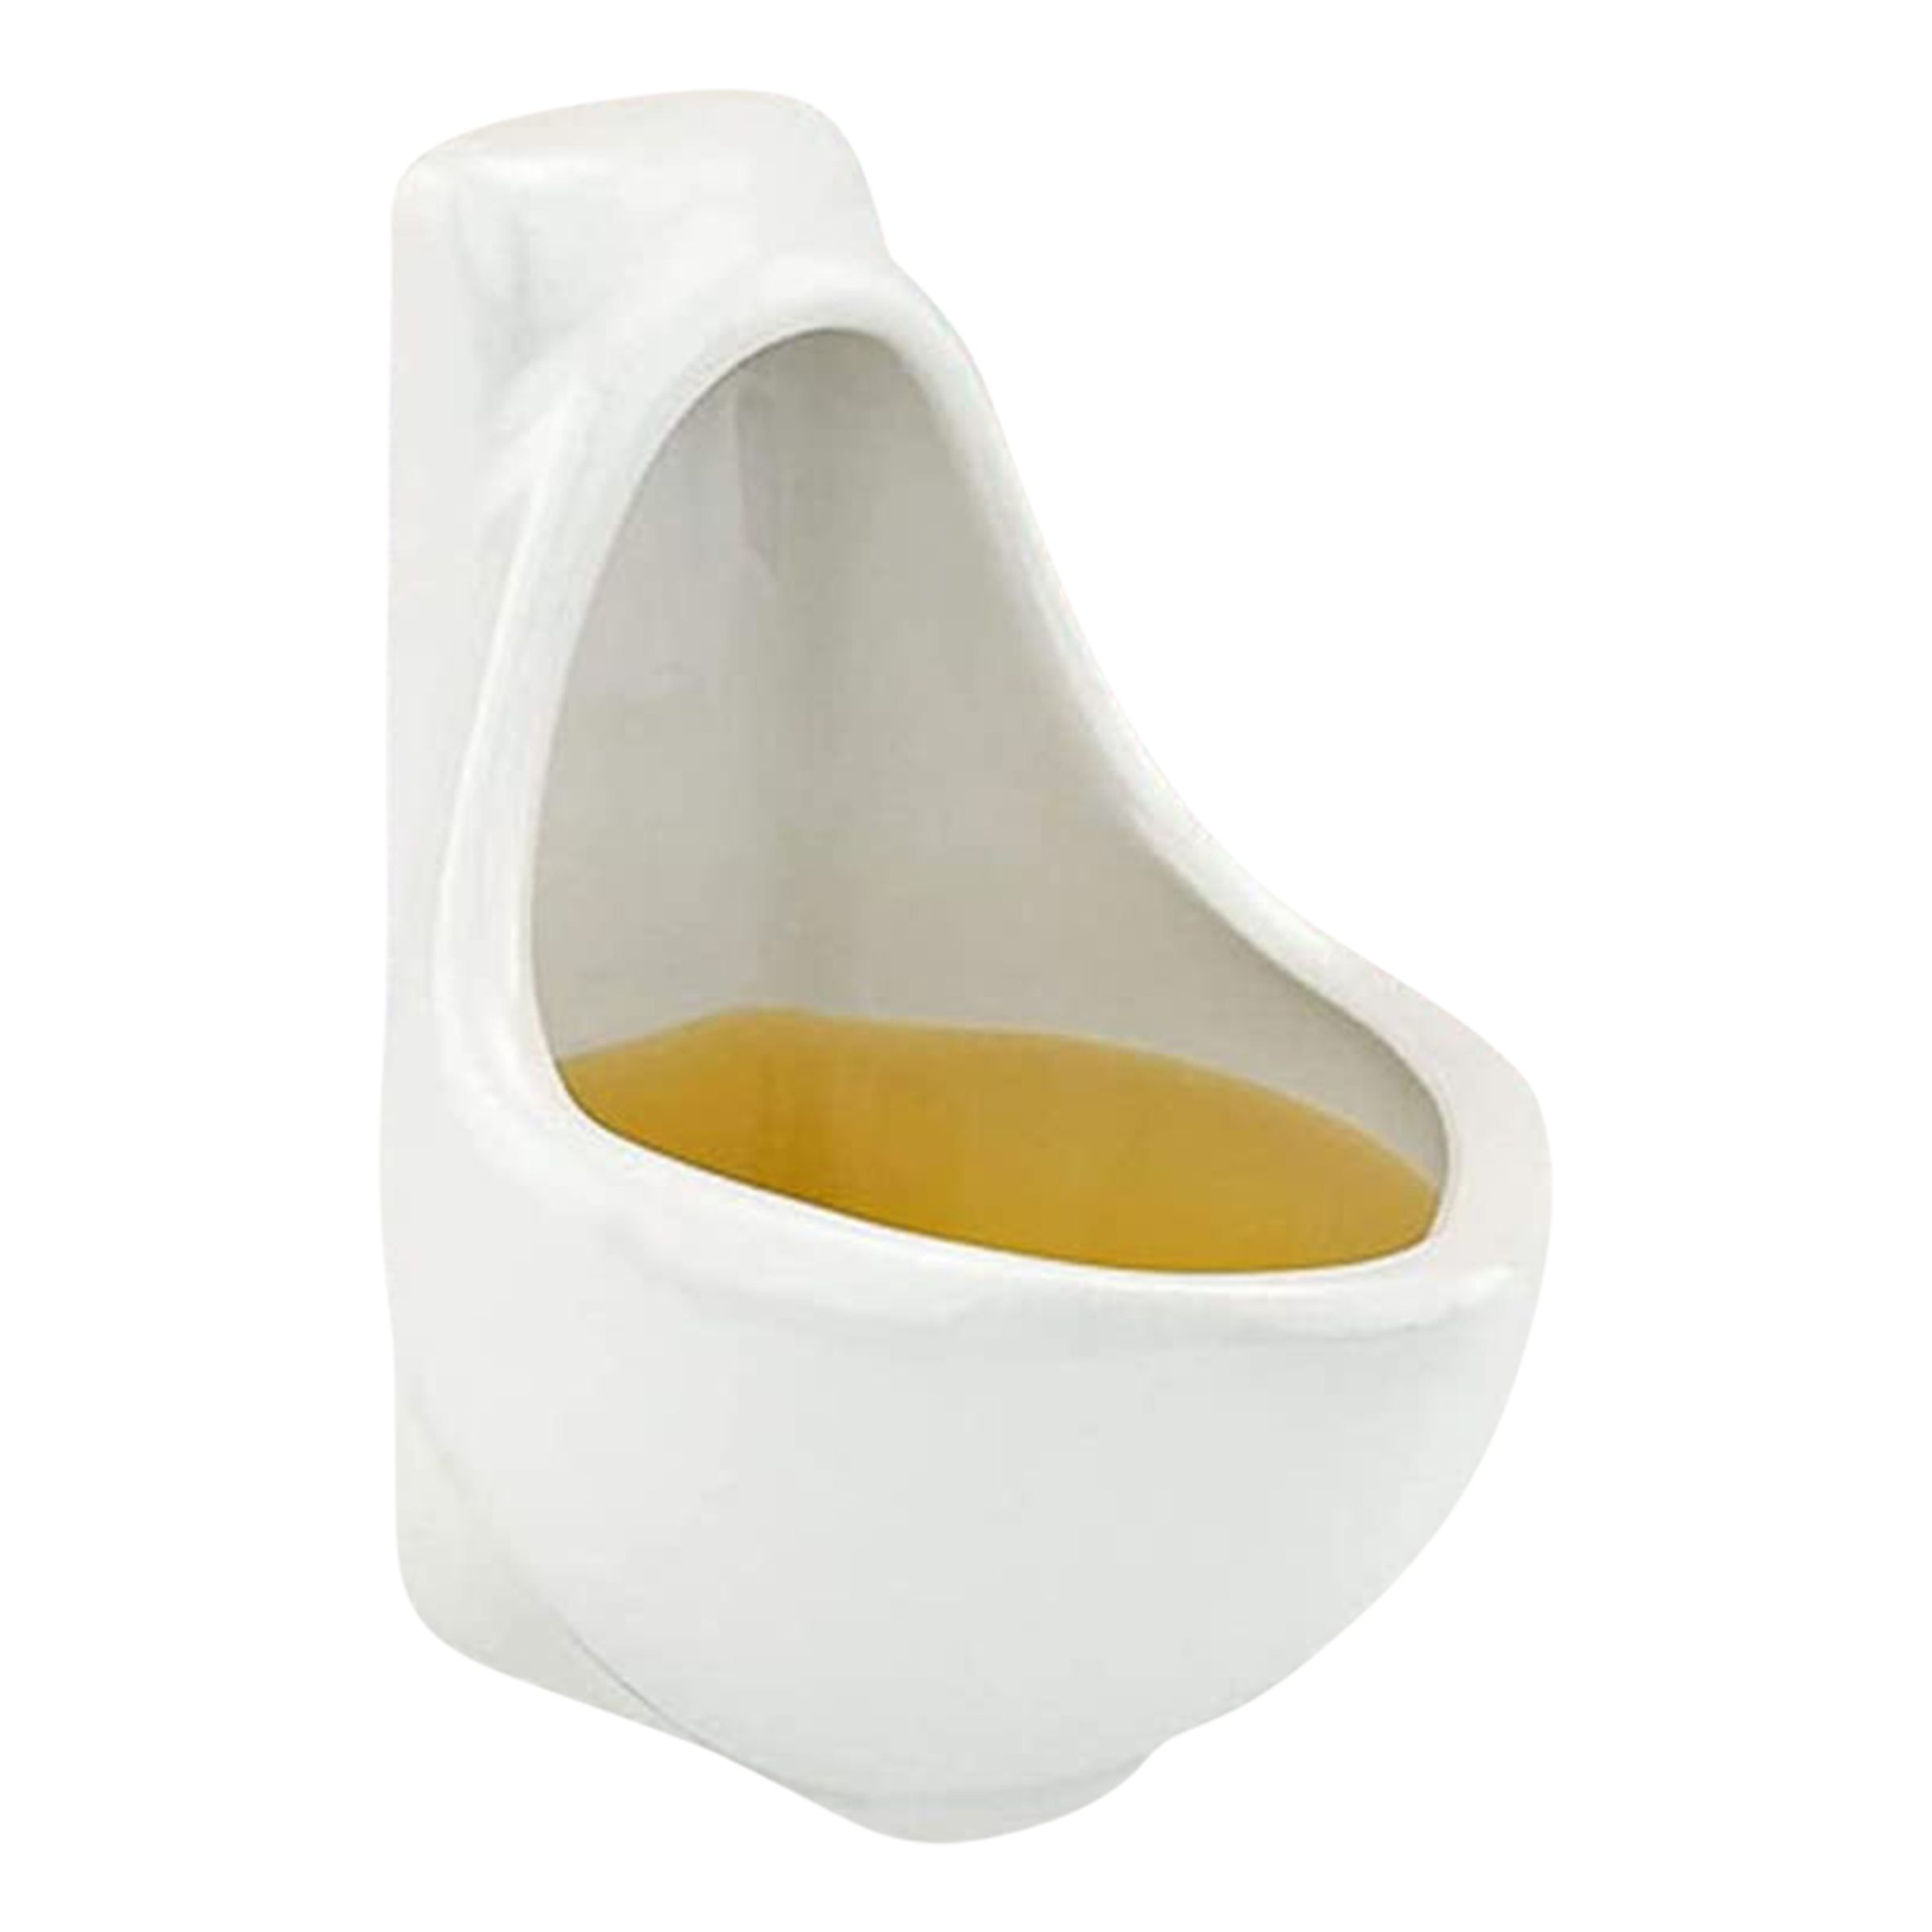 Urinoar Muggar - 4-pack